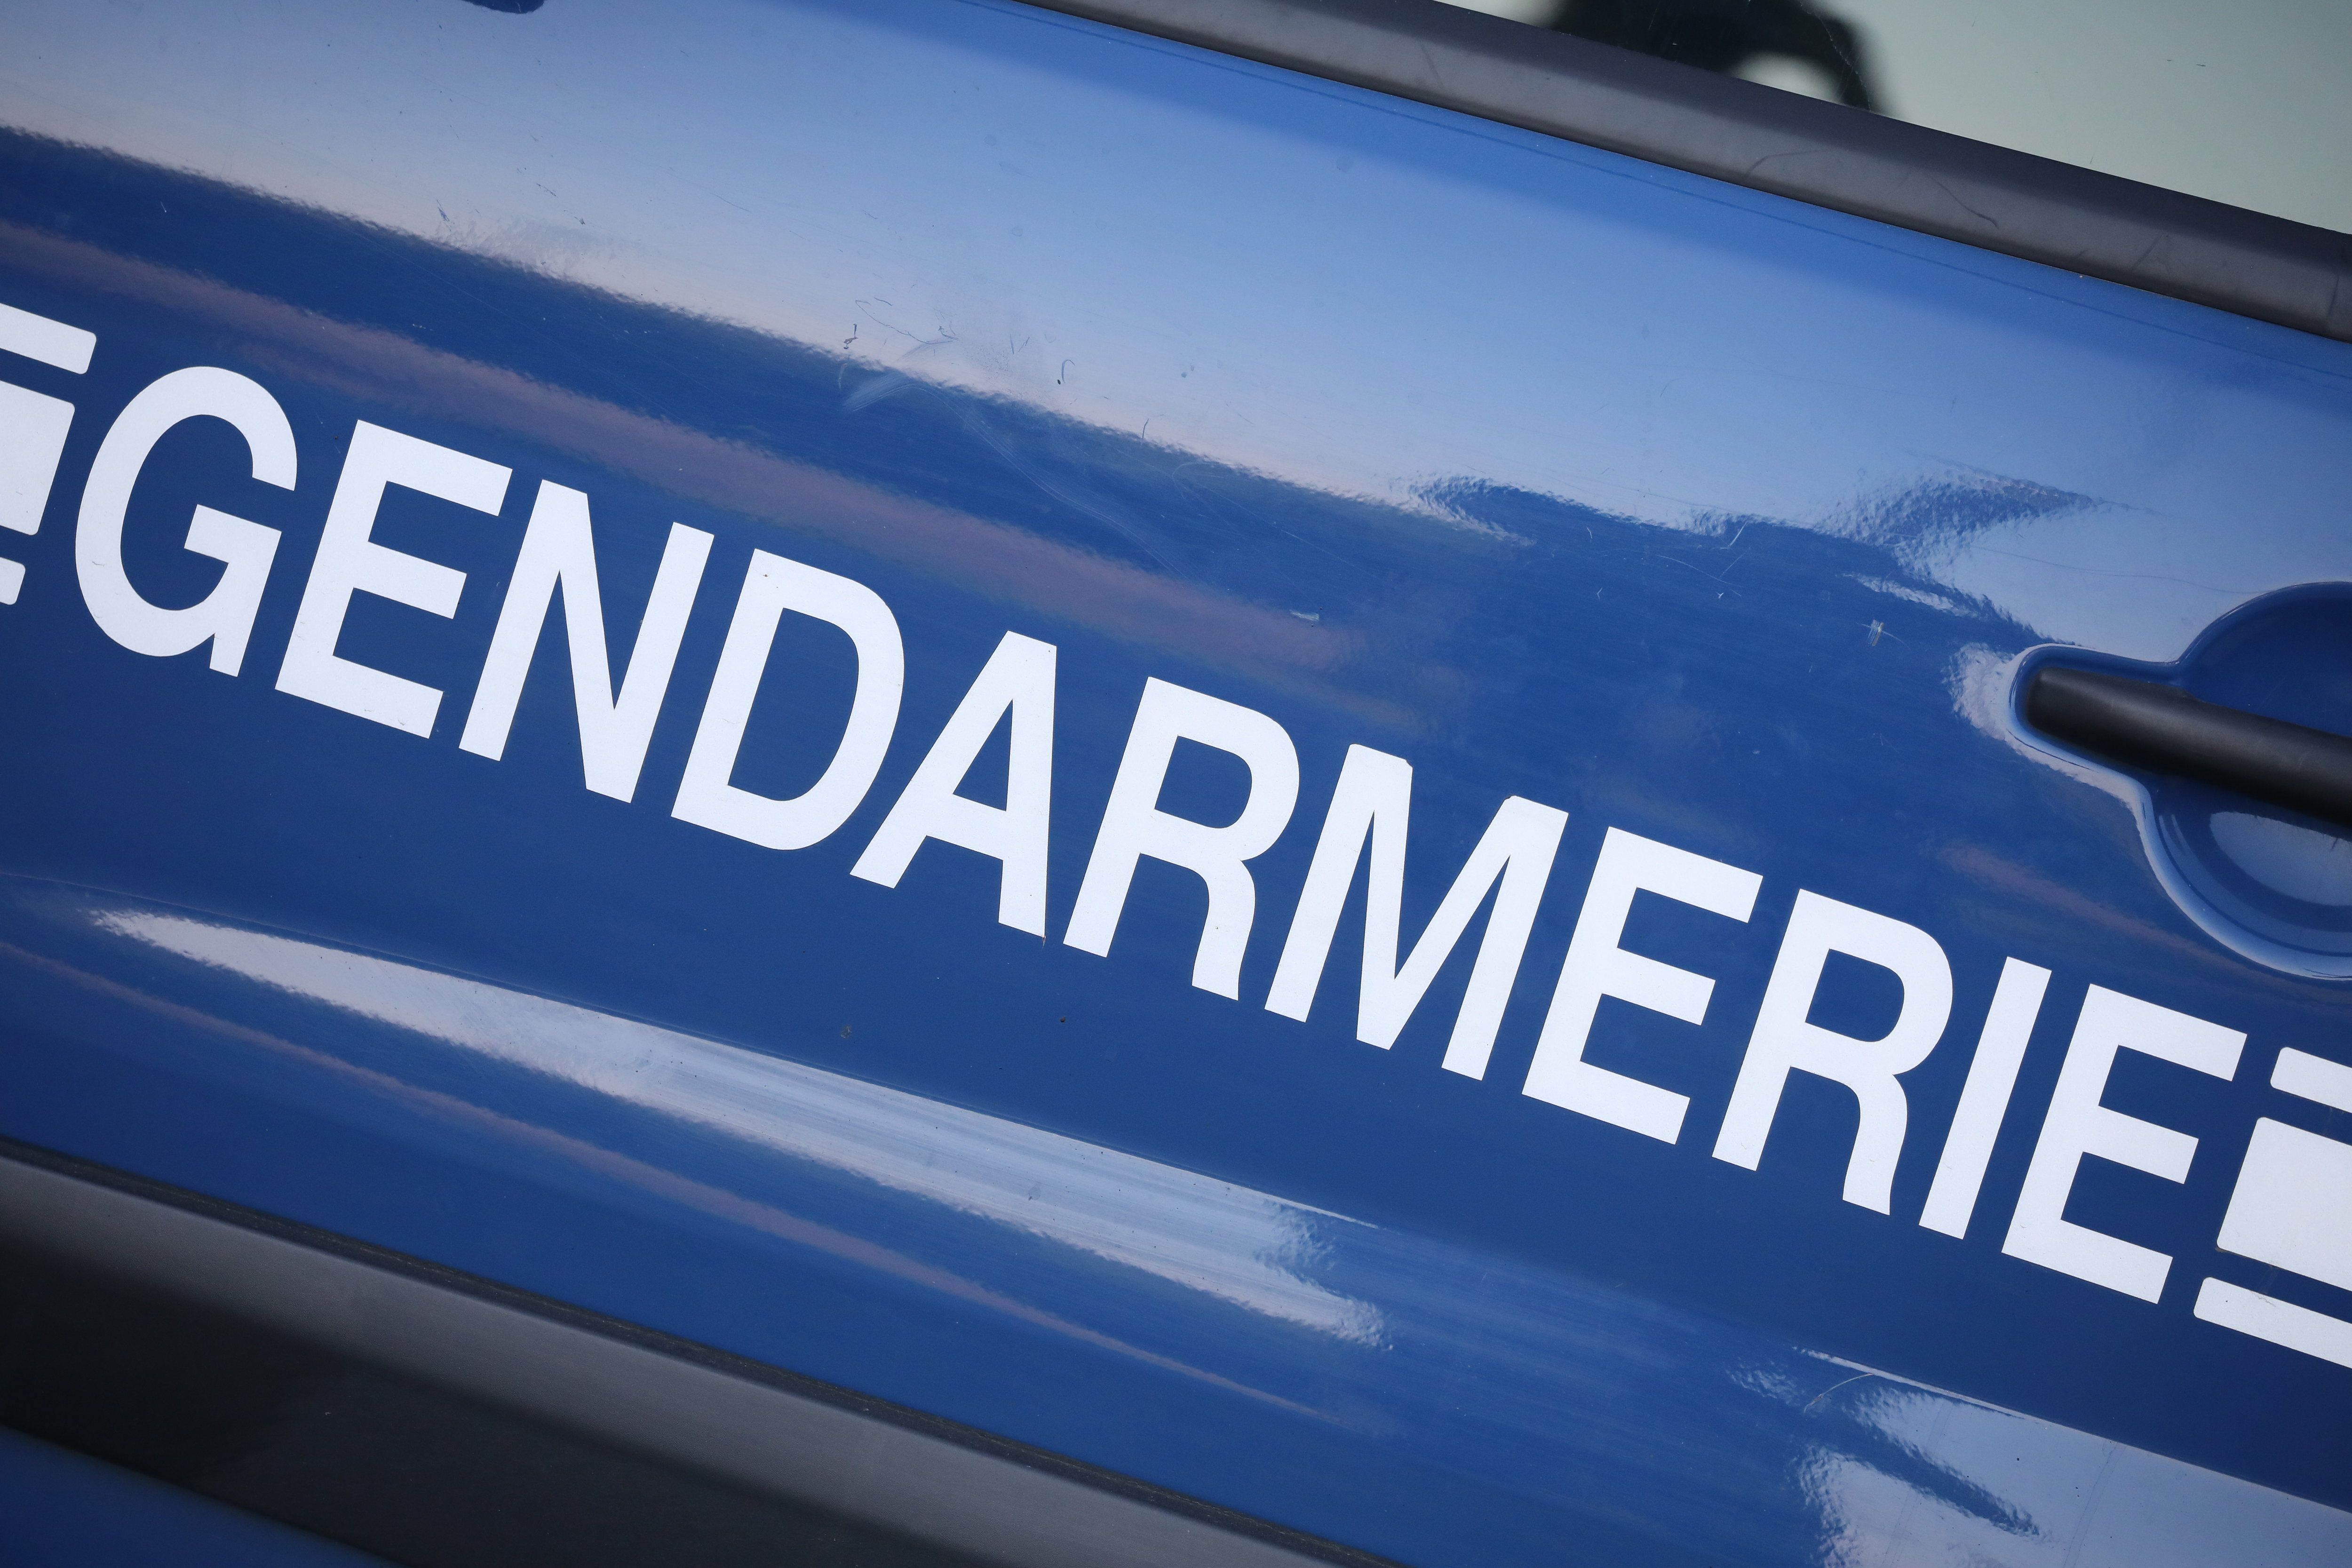 Une enquête a été ouverte par la gendarmerie après la dégradation d'un monument aux morts dans la Creuse. LP / Arnaud Journois